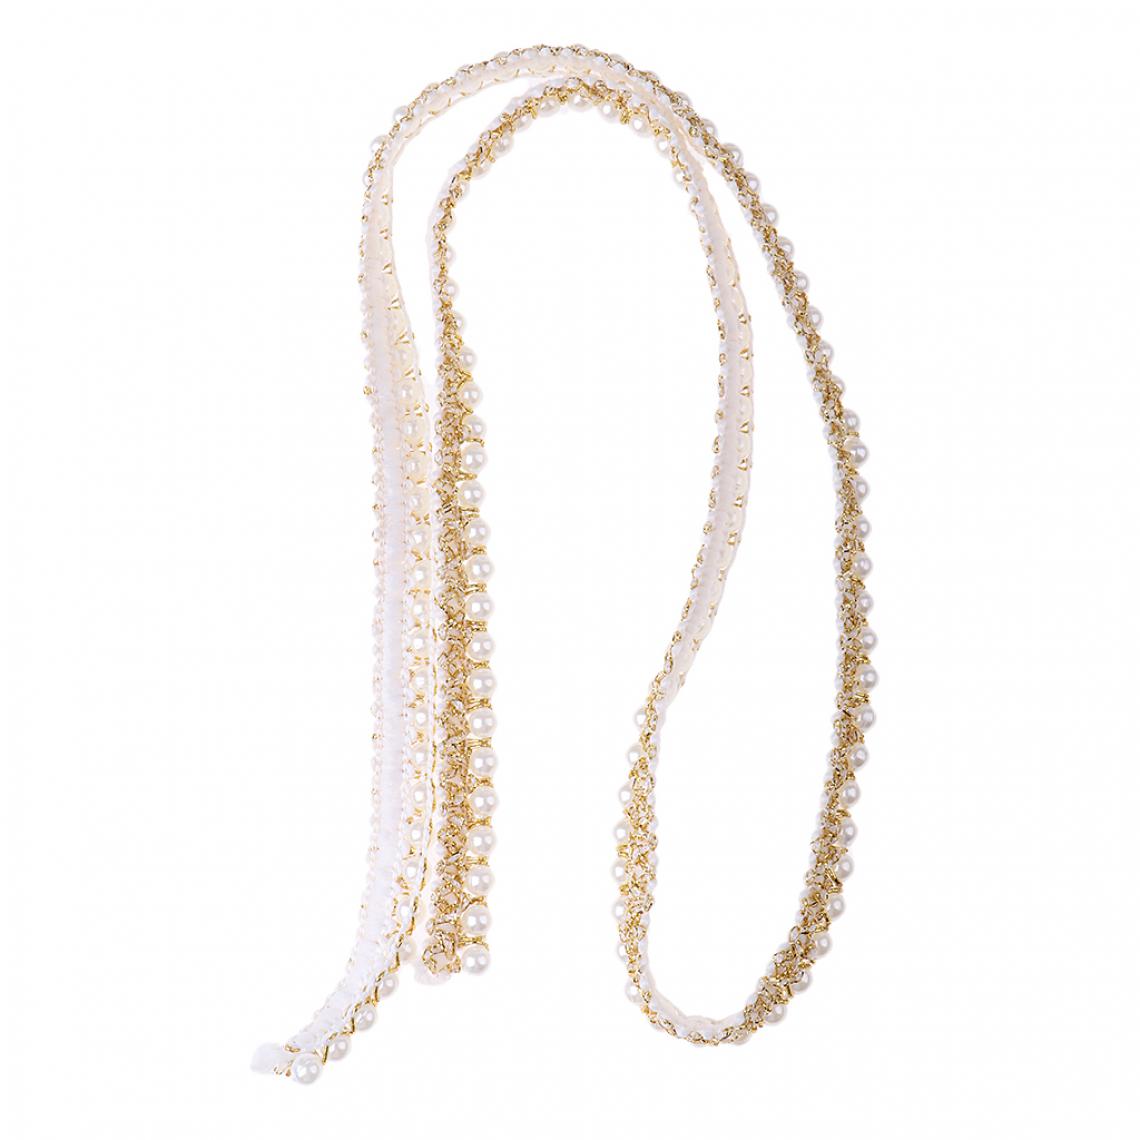 marque generique - 1 yard 15 mm ruban de dentelle perle pour la décoration des vêtements diy craft supply noir - Objets déco